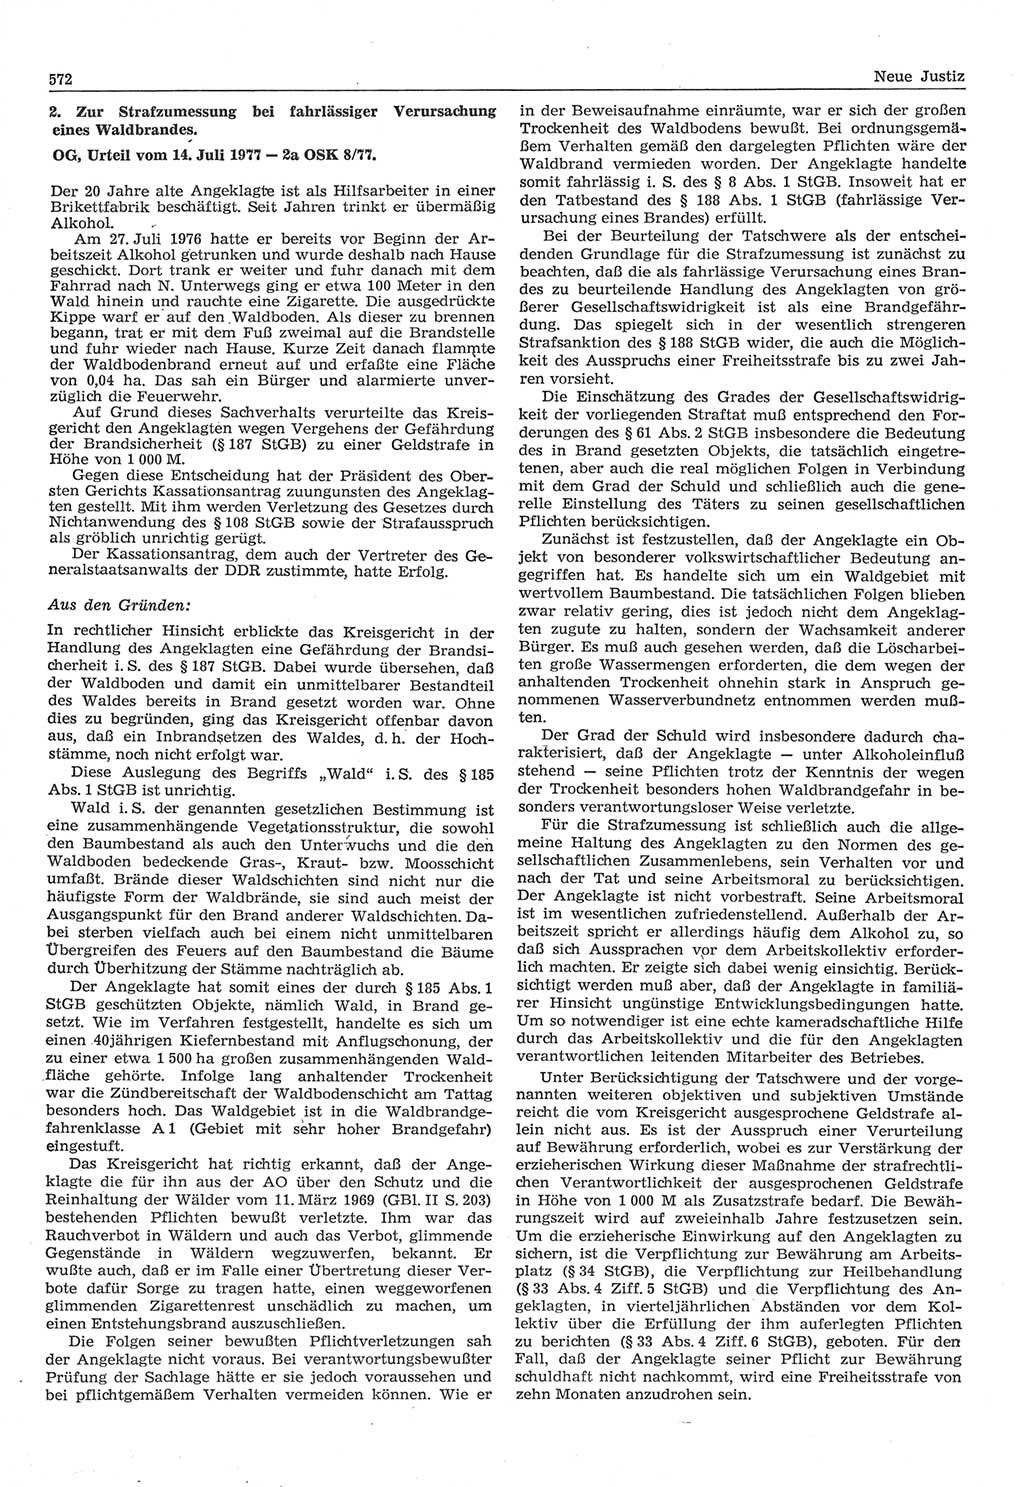 Neue Justiz (NJ), Zeitschrift für Recht und Rechtswissenschaft-Zeitschrift, sozialistisches Recht und Gesetzlichkeit, 31. Jahrgang 1977, Seite 572 (NJ DDR 1977, S. 572)